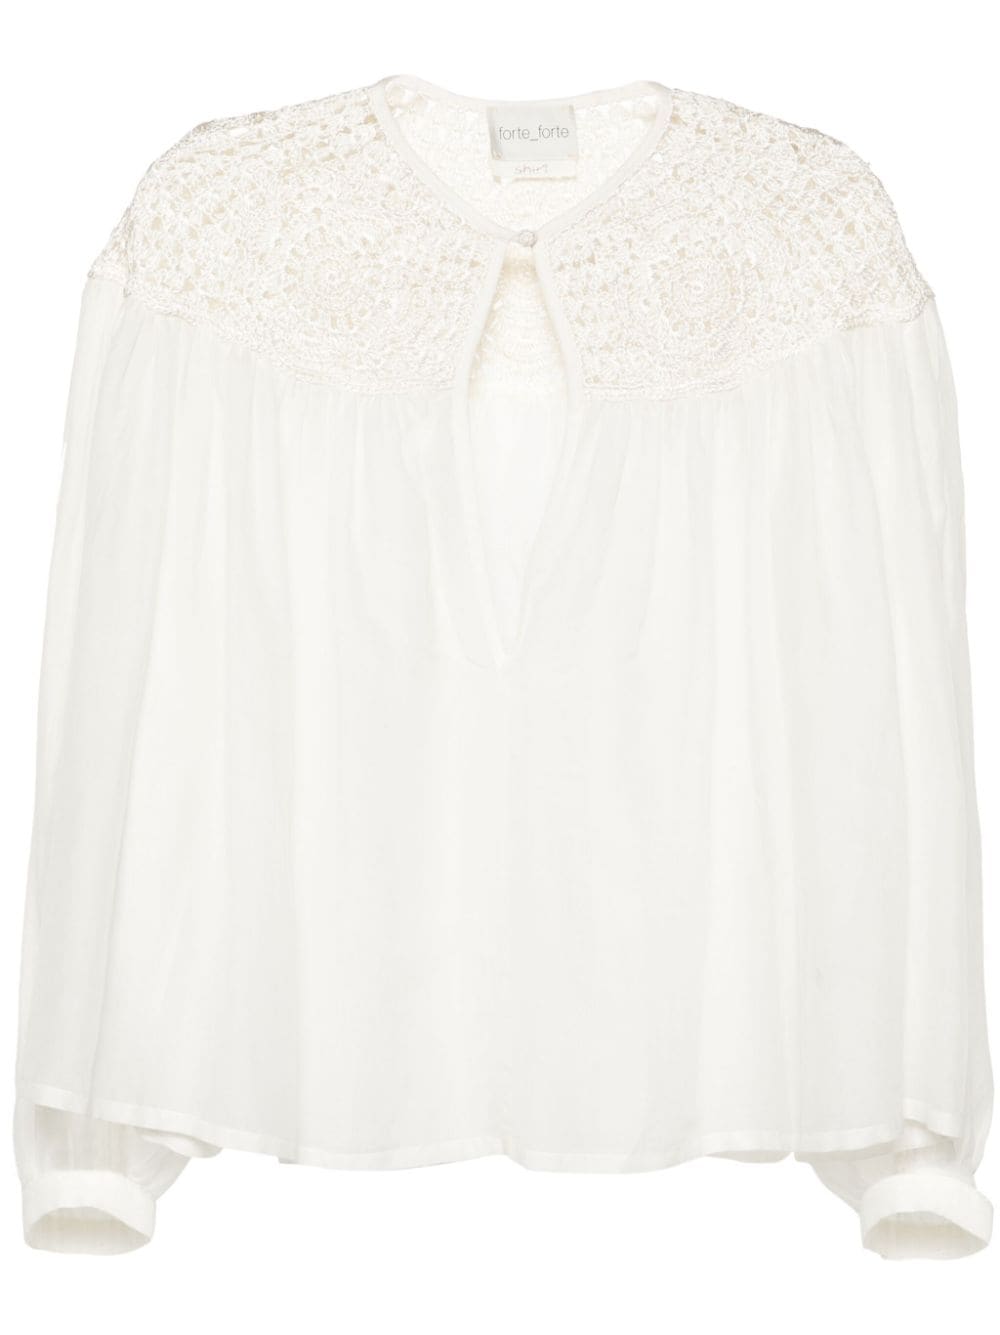 Forte Forte crochet-panel long-sleeve blouse - White von Forte Forte